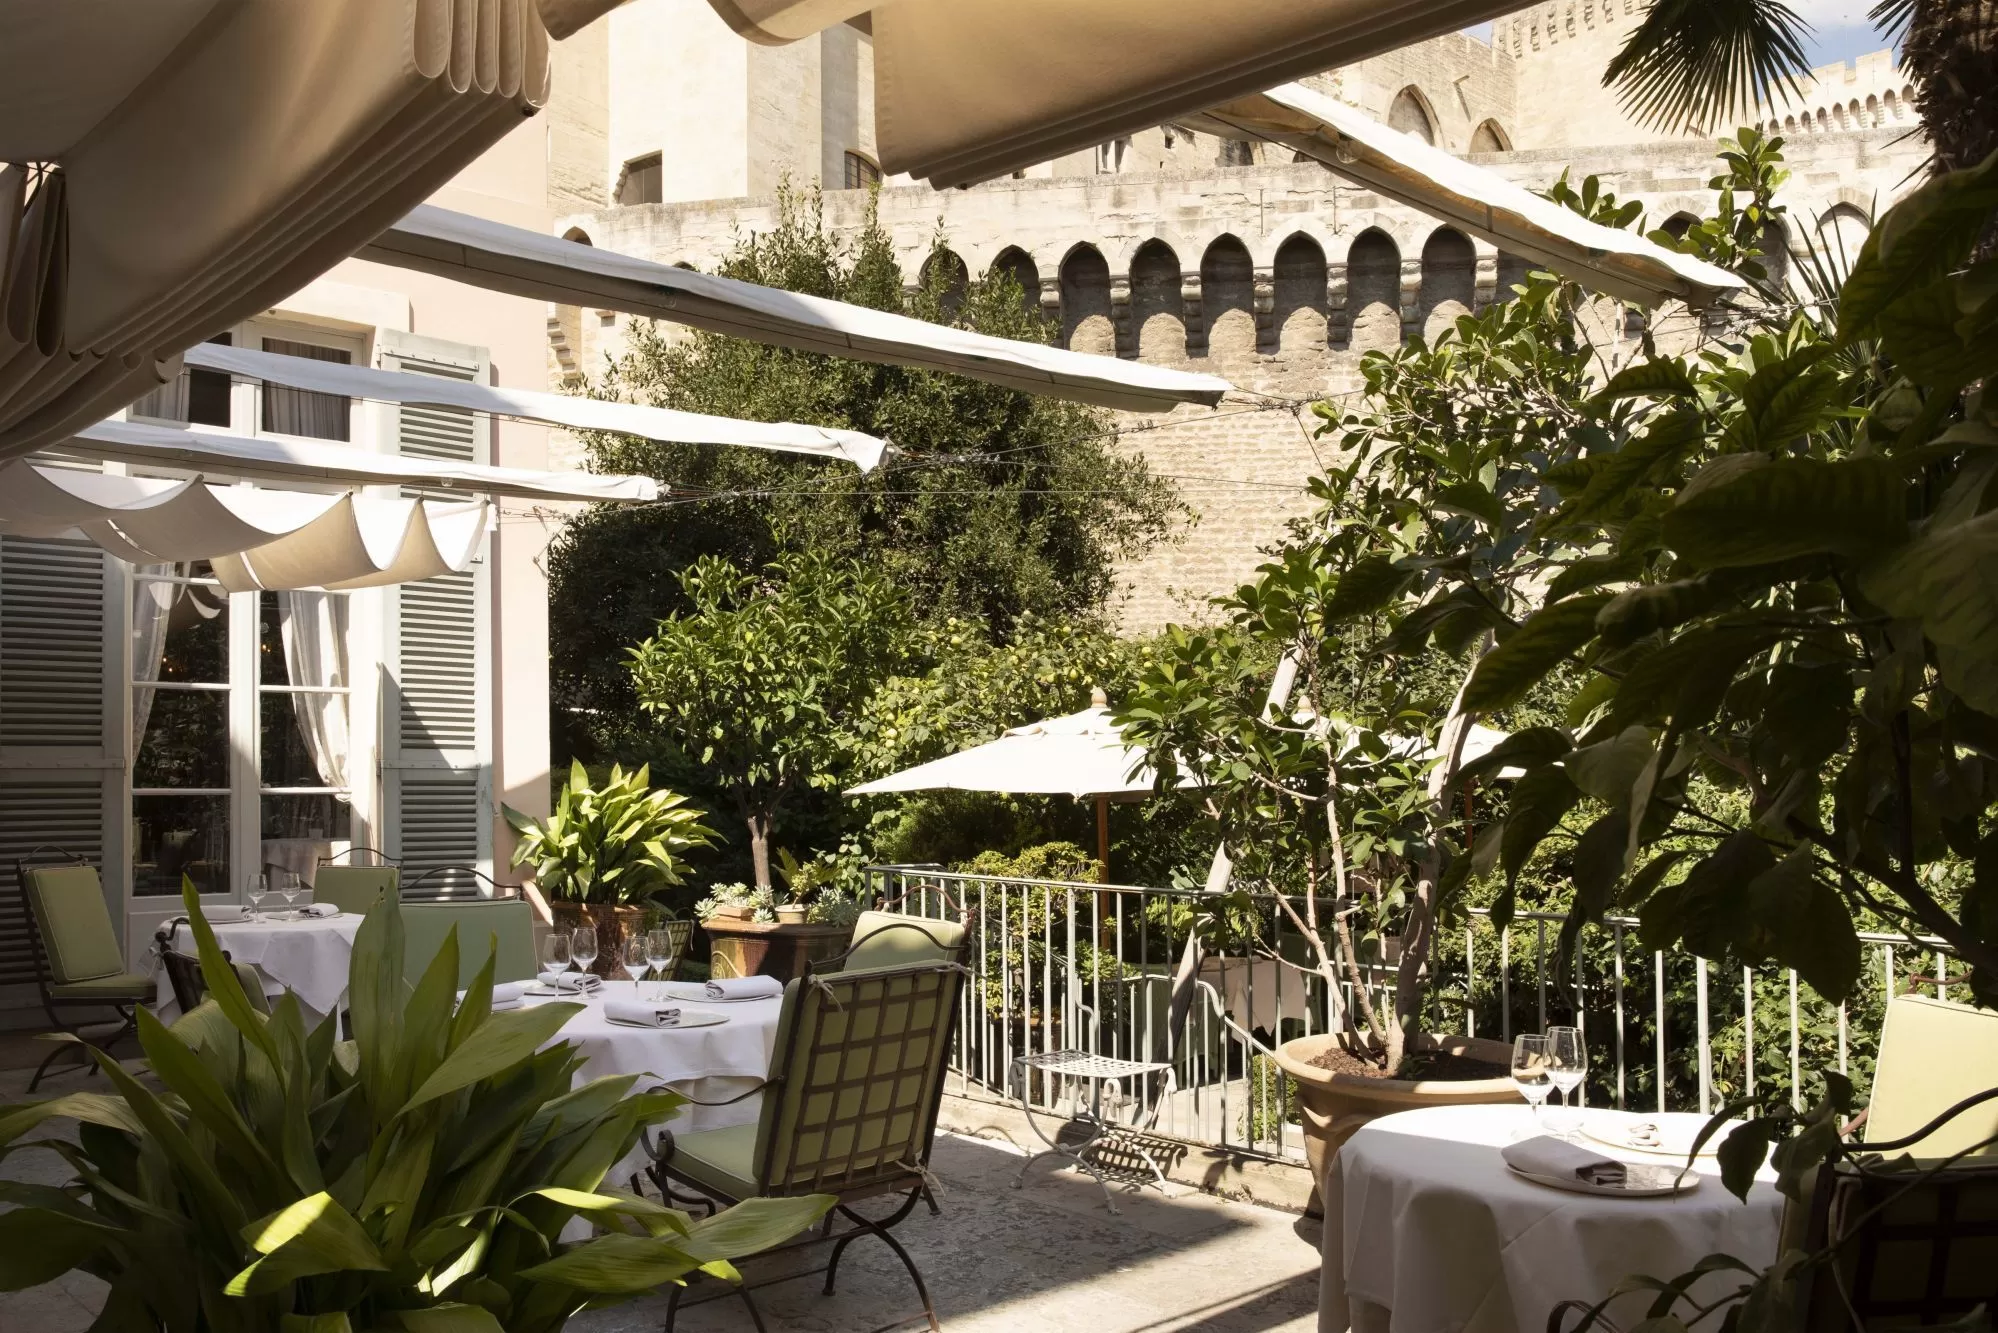 Hôtel luxe 5 étoiles Avignon Provence - Restaurant gastronomique étoilé Michelin